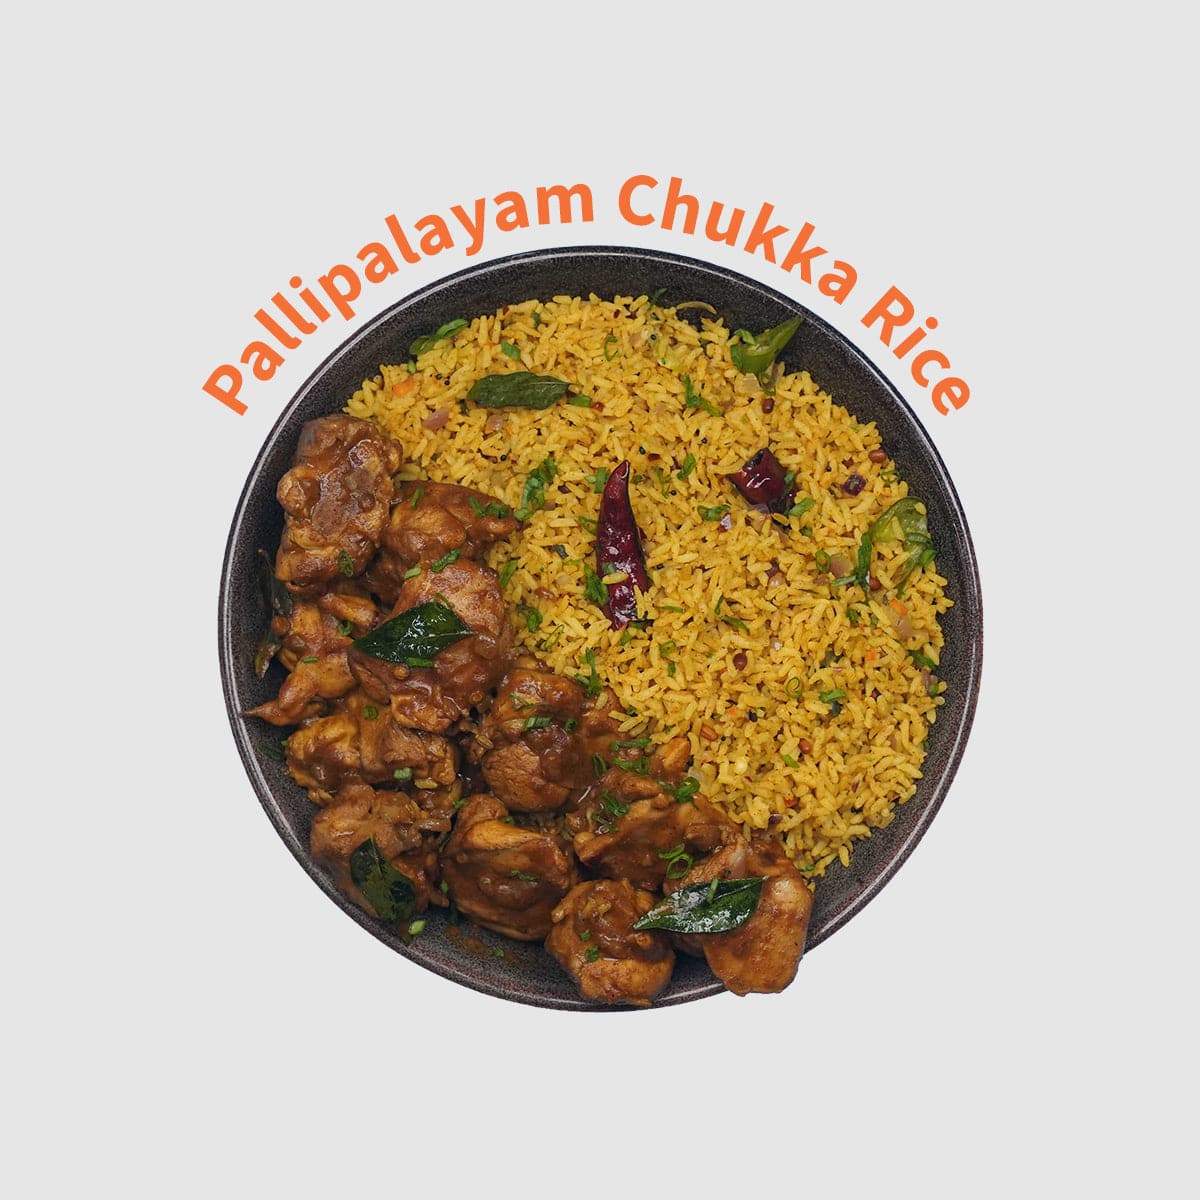 Pallipalayam Chukka Rice